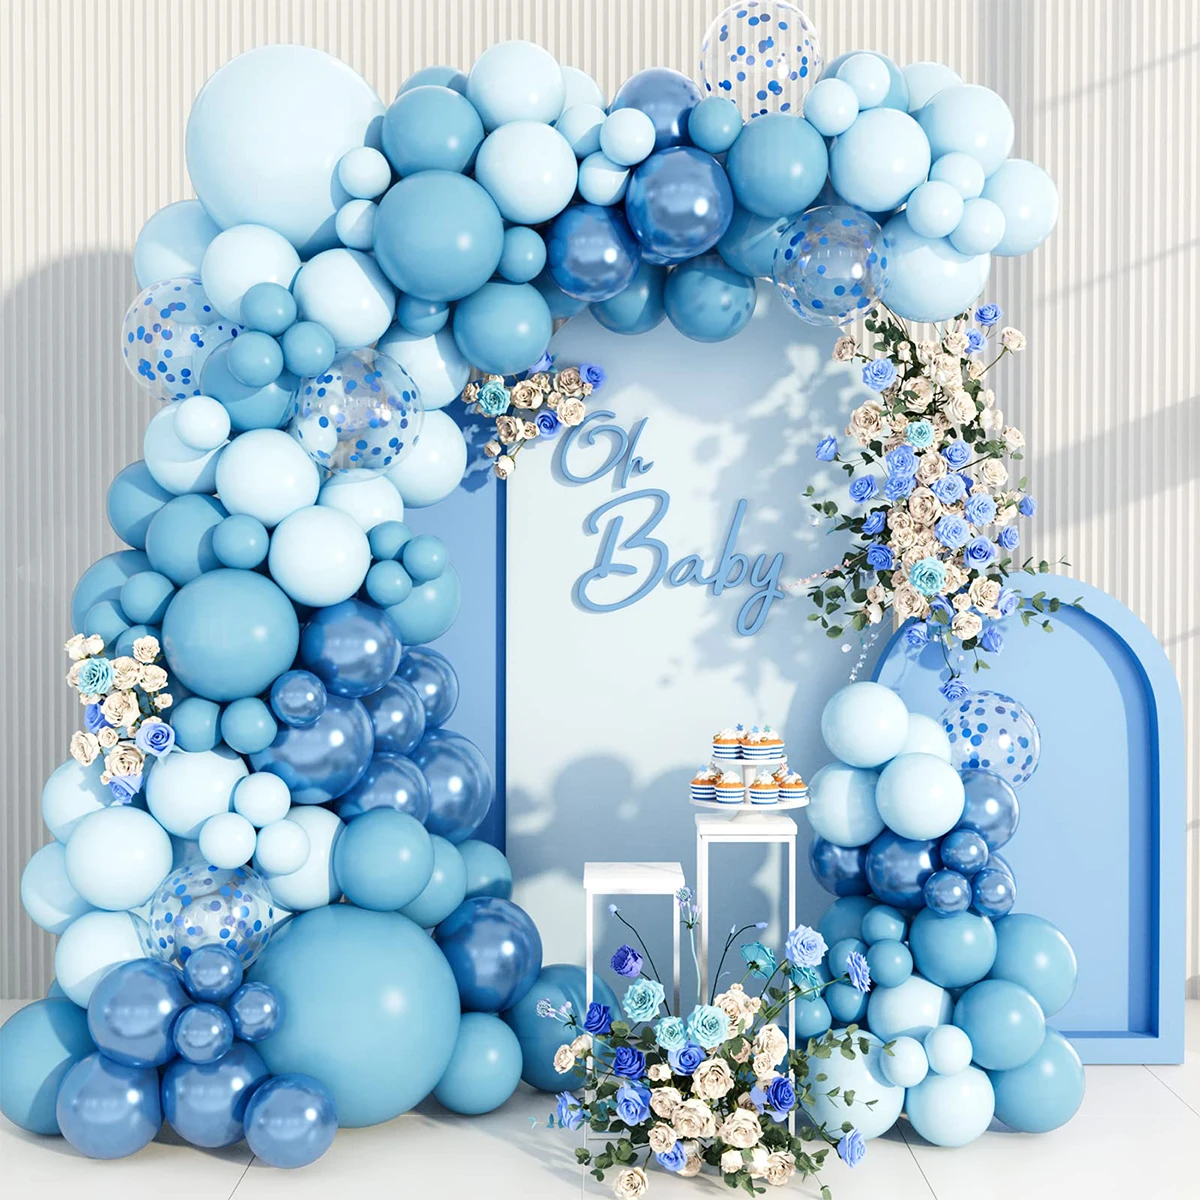 

Синие воздушные шары, гирлянда, украшение для свадьбы, дня рождения, первый день рождения, детский праздник, латексный шар